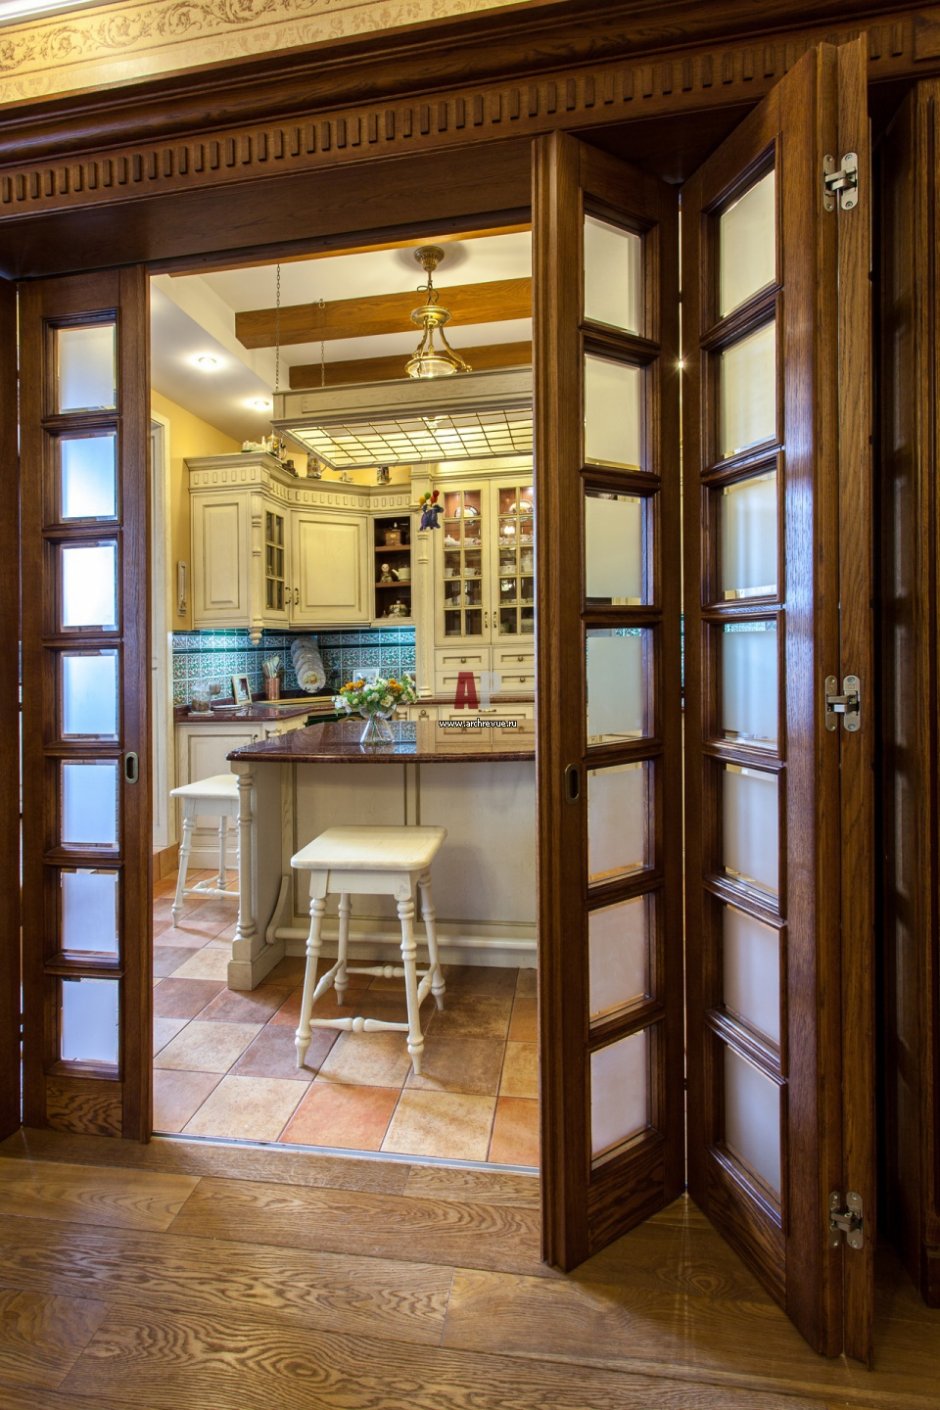 Раздвижные межкомнатные двери между кухней и гостиной